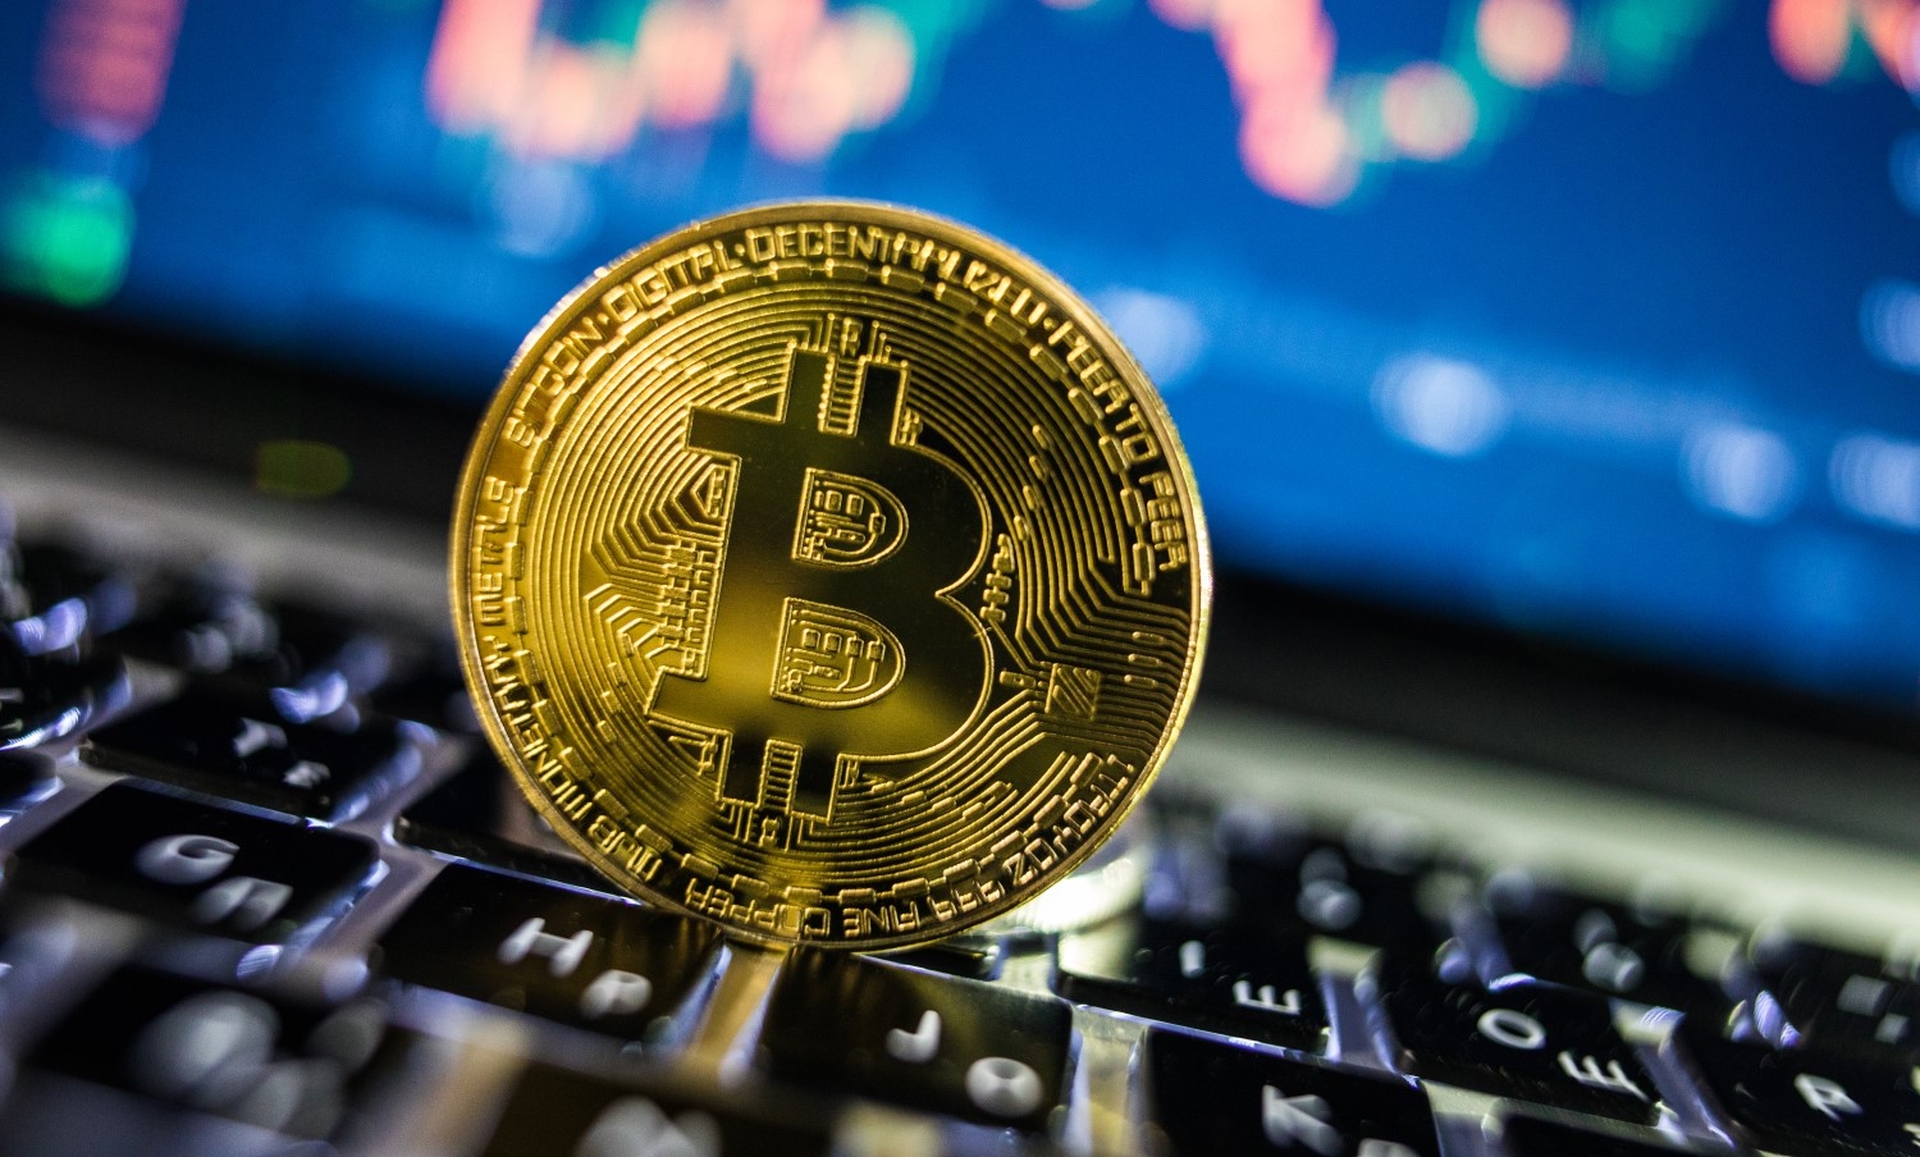 Dans cet article, nous allons expliquer pourquoi Bitcoin s'effondre, car la plus grande crypto-monnaie du marché a plongé pour le pire.